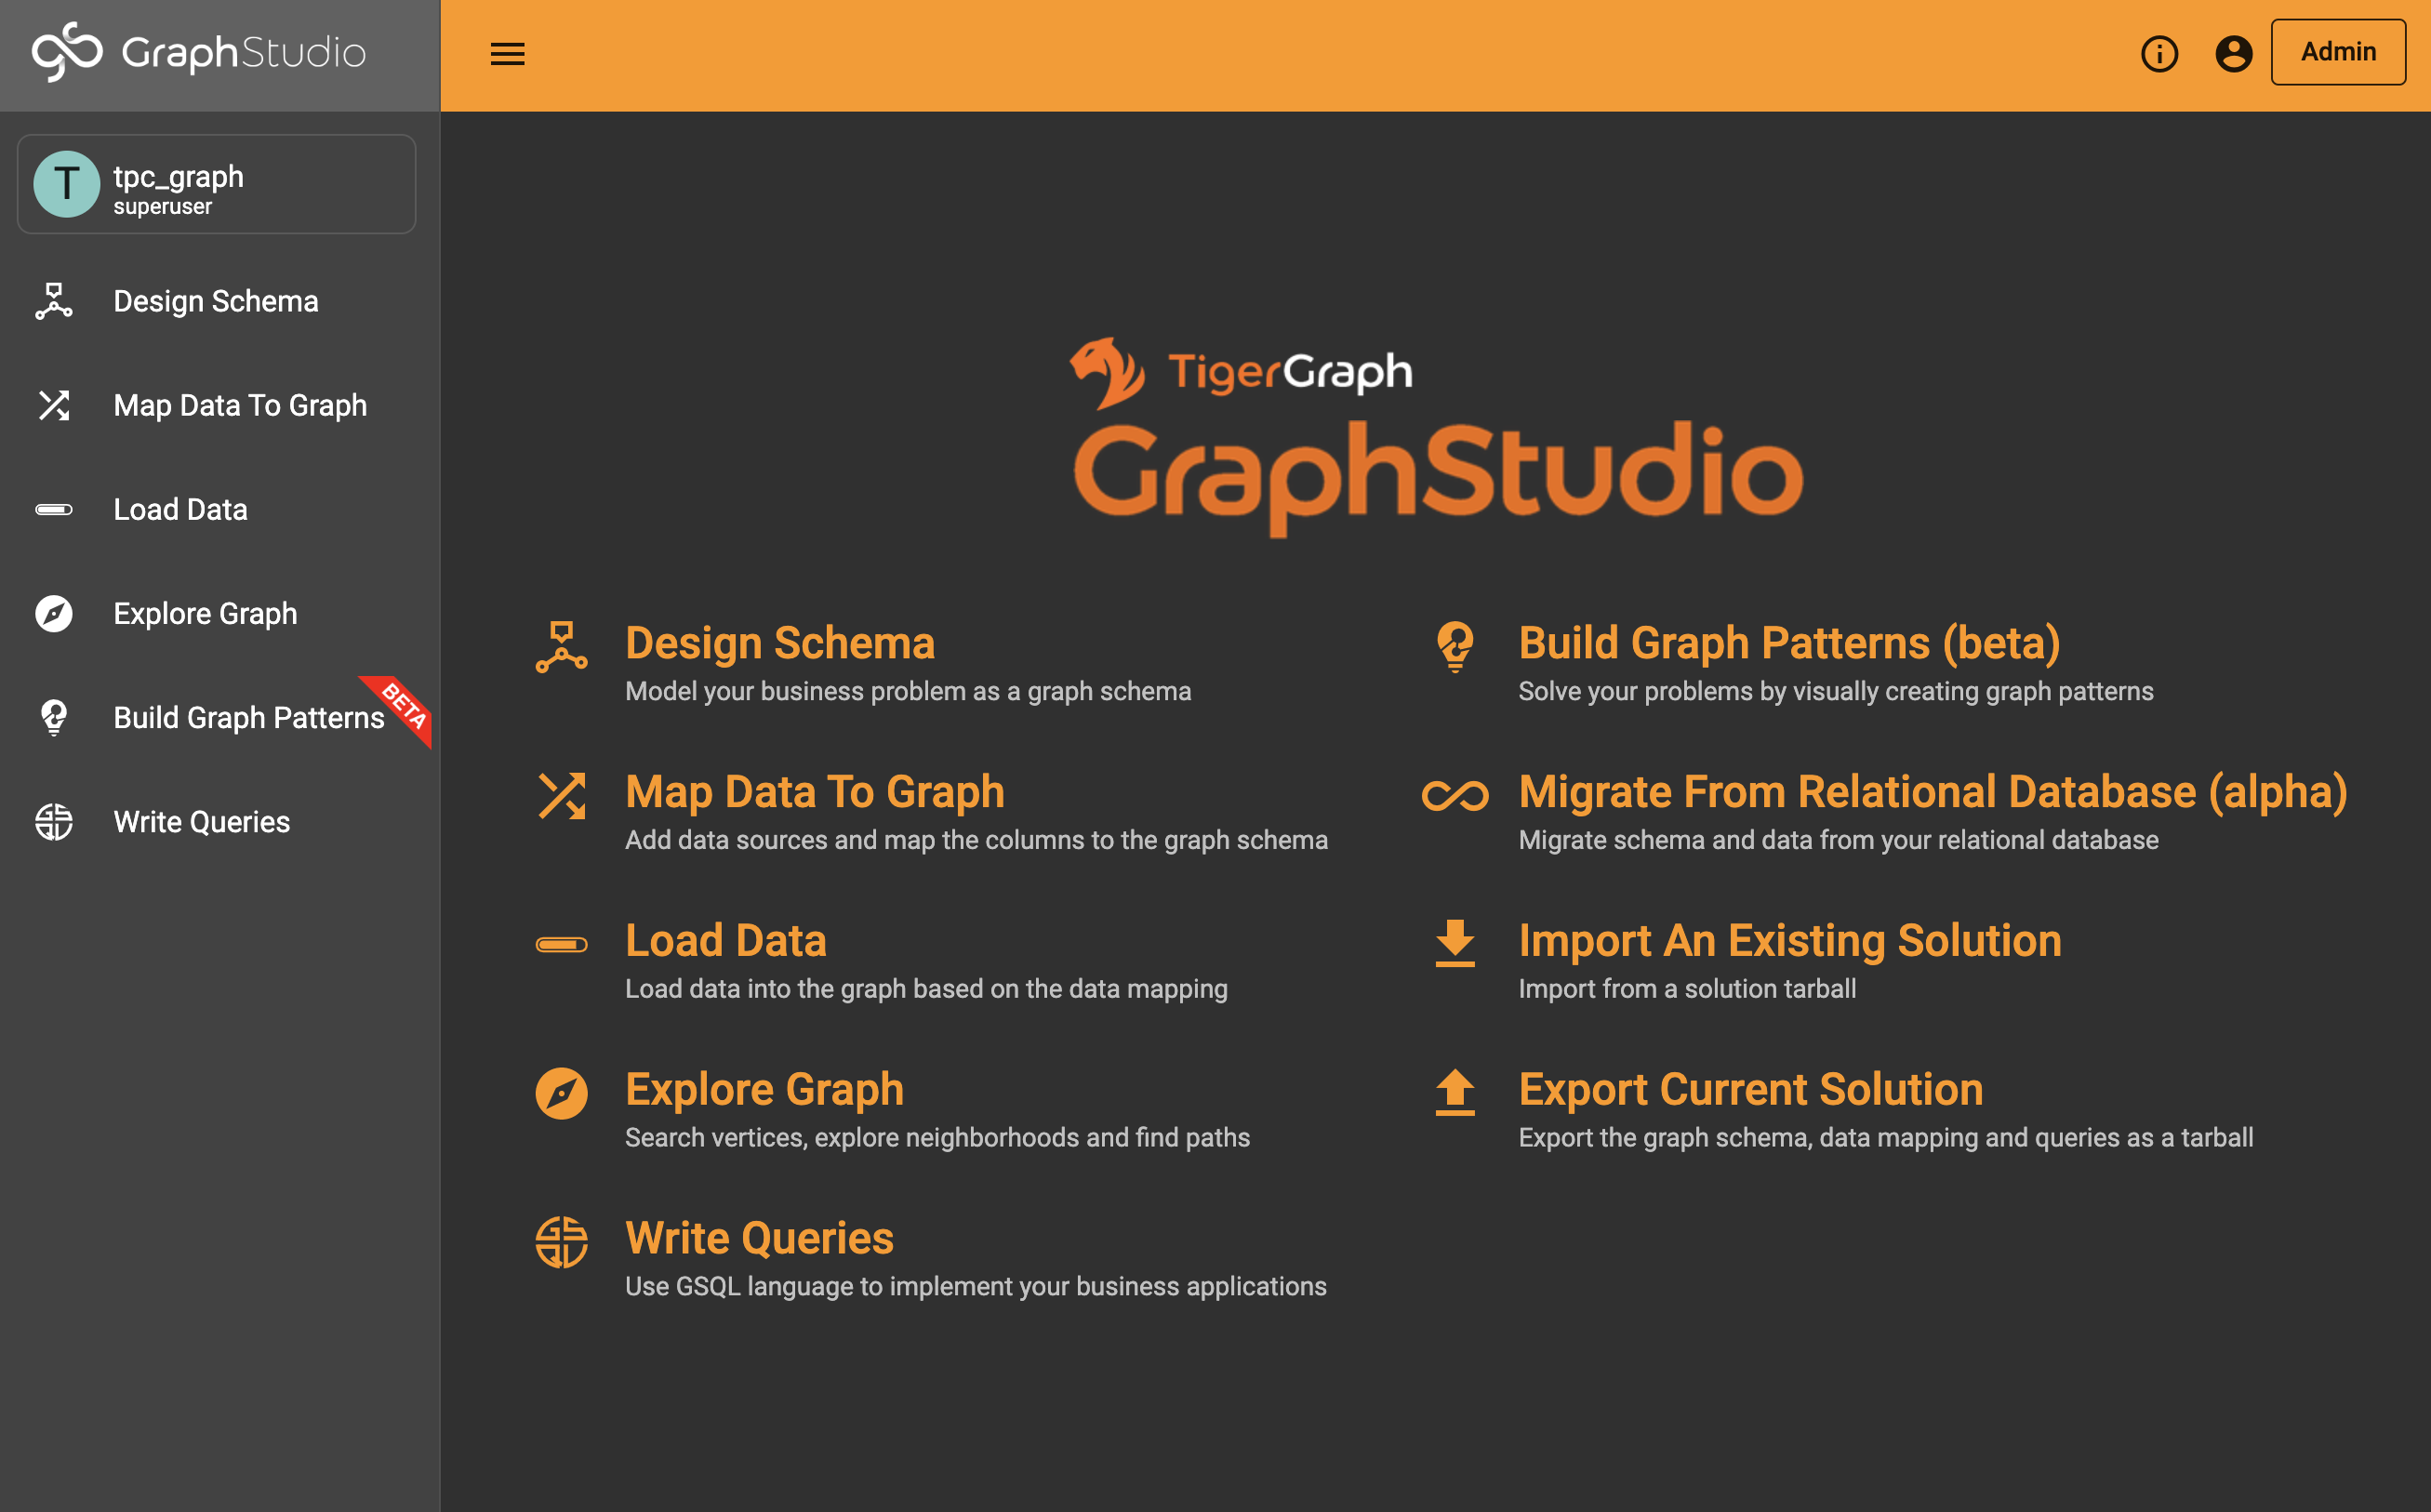 graphstudio main page